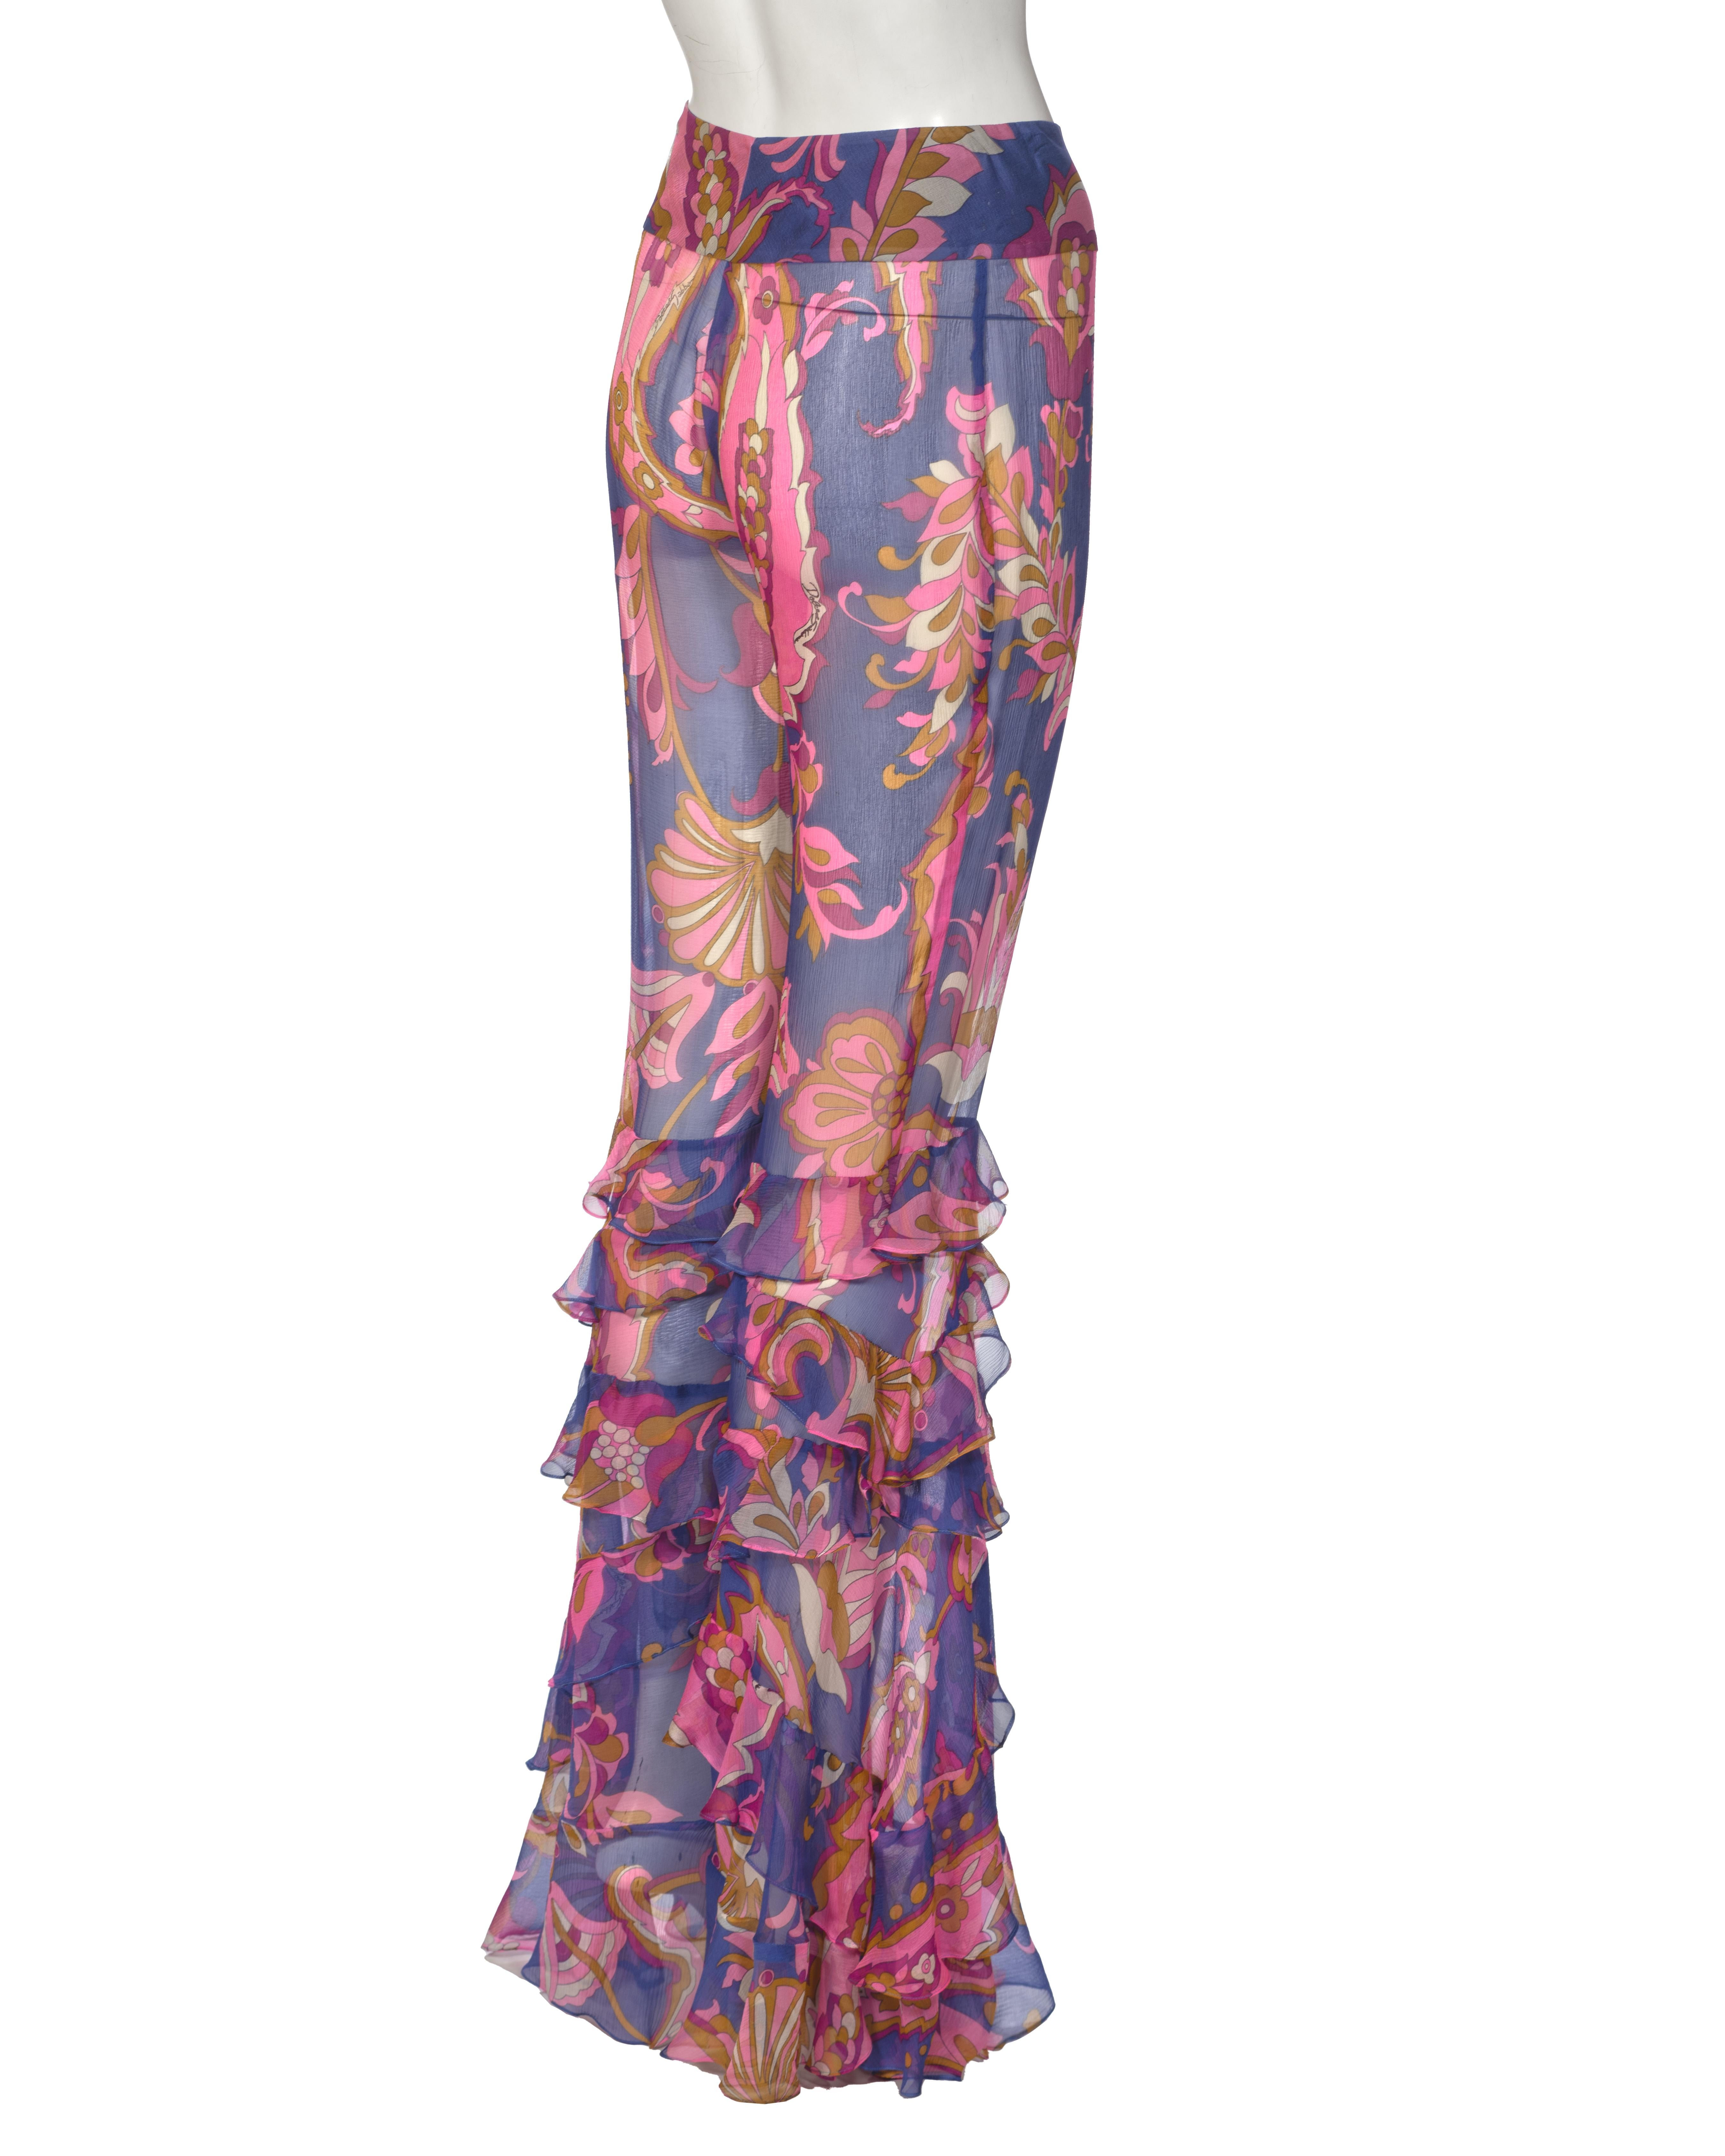 Dolce & Gabbana Silk Chiffon Ruffled Flared Pants, ss 2004 For Sale 2